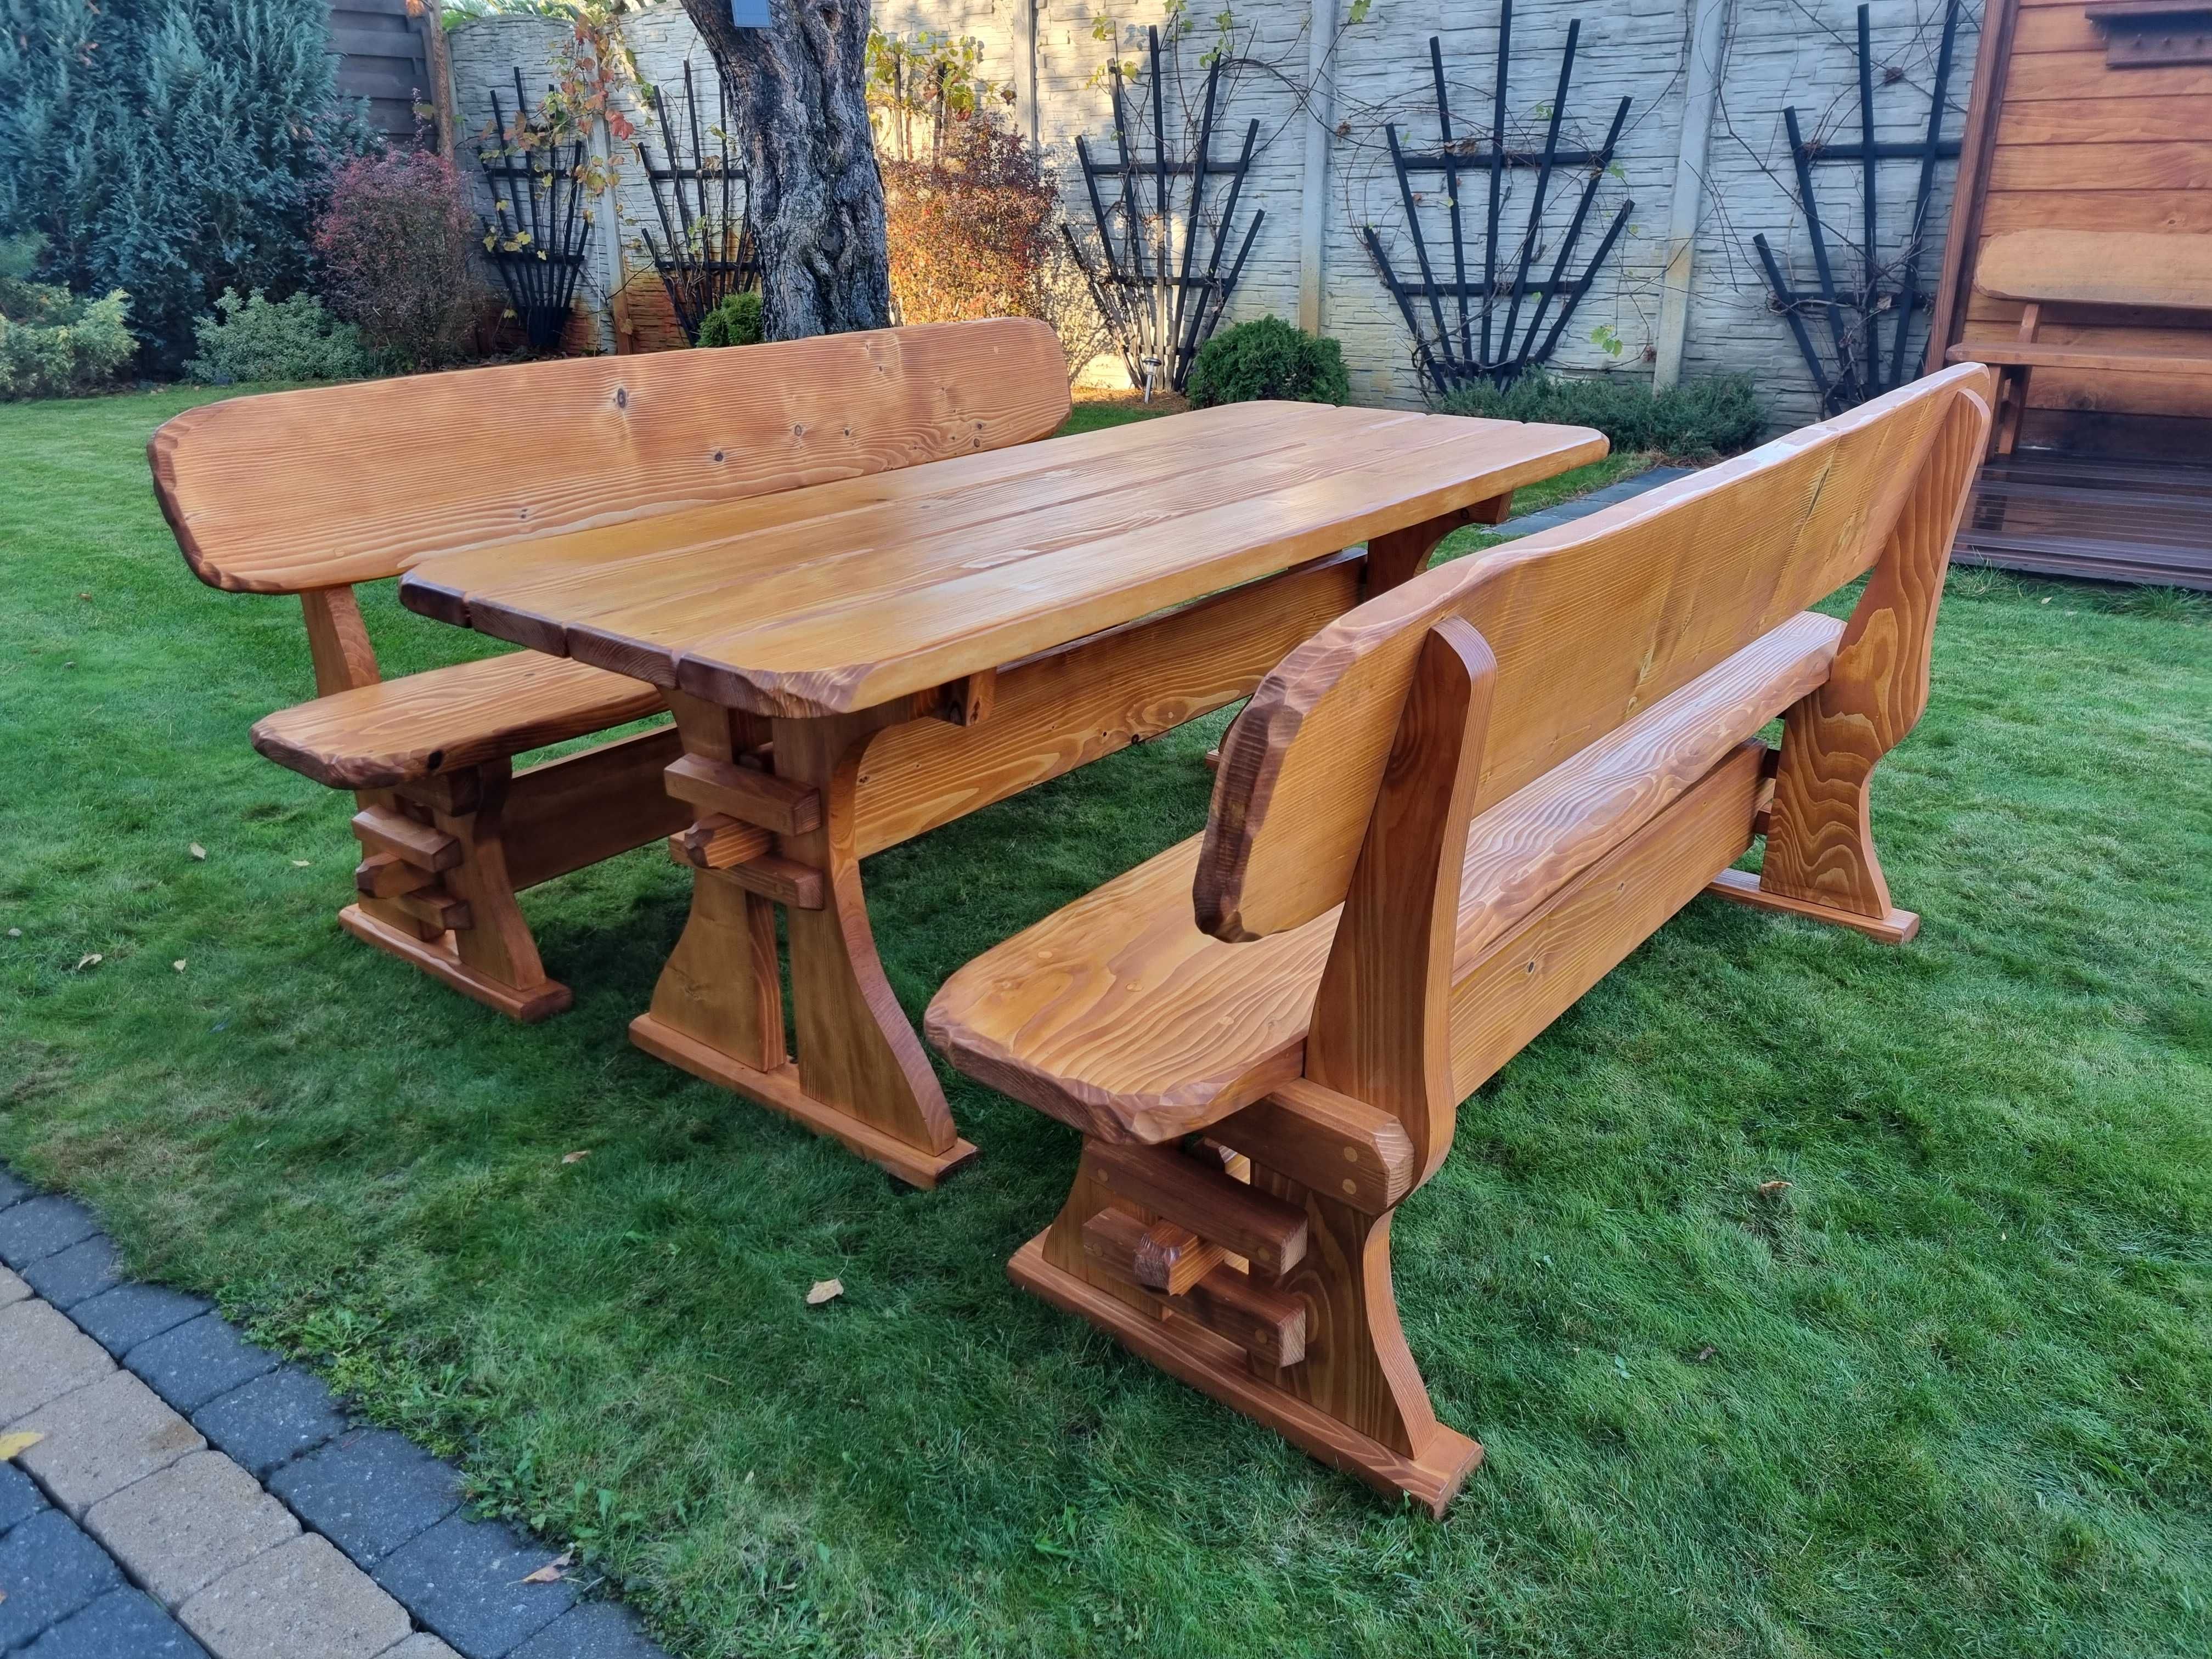 zestaw komplet do ogrodu ogródka na działkę taras stół ławki z drewna